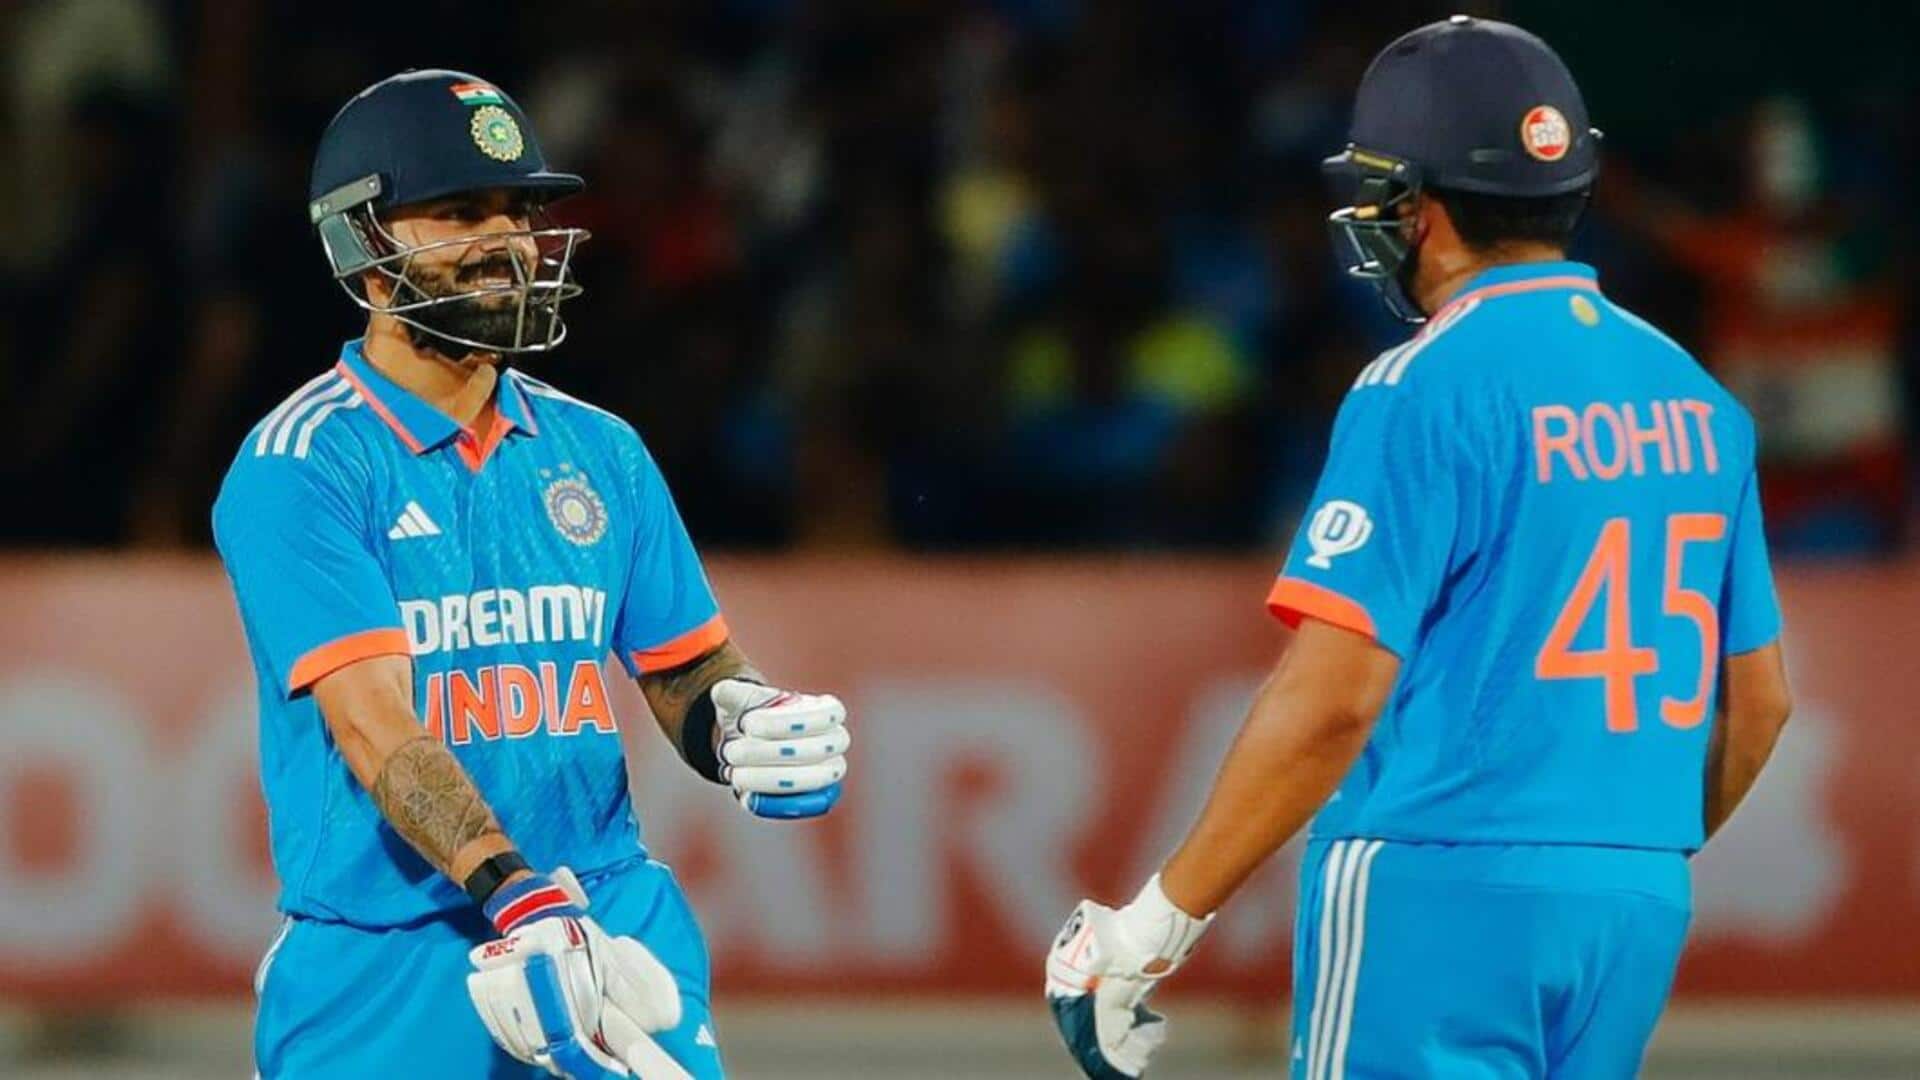 वनडे विश्व कप: इन भारतीय बल्लेबाजों ने लगाया है सबसे तेज शतक, शीर्ष पर वीरेंद्र सहवाग